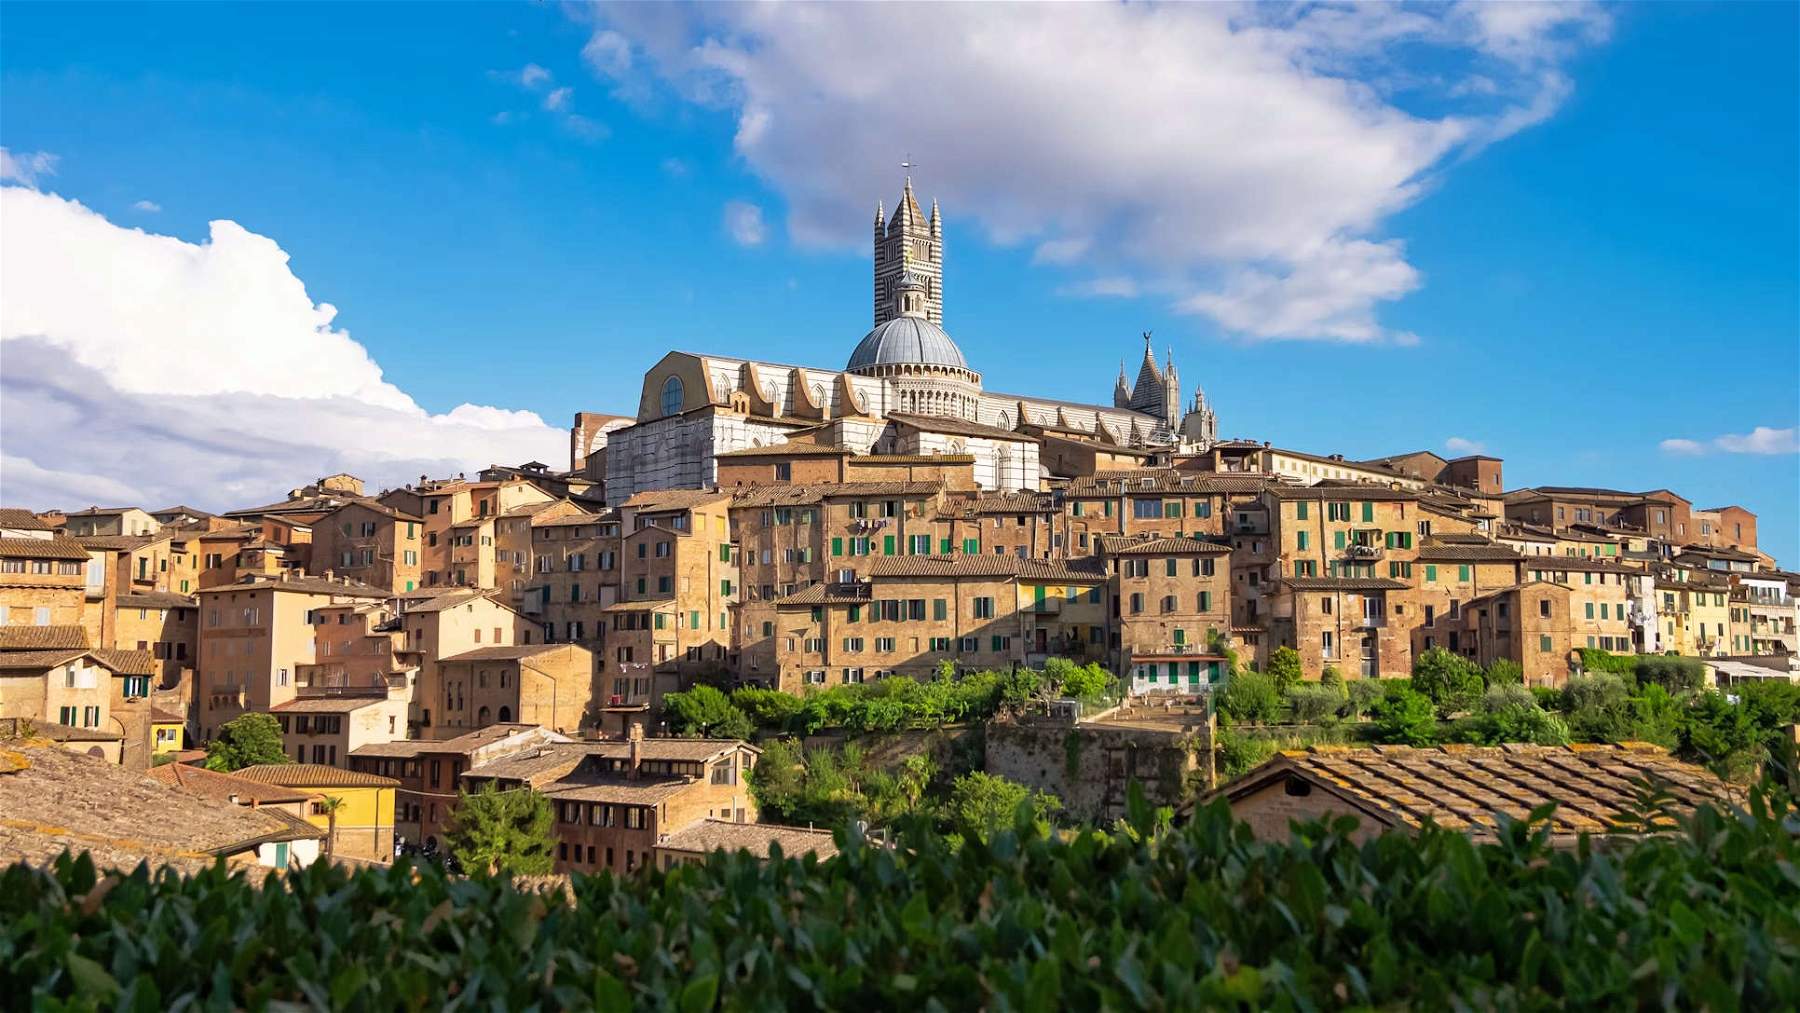 Siena, Palazzo delle Papesse riaprirà dopo anni di chiusura